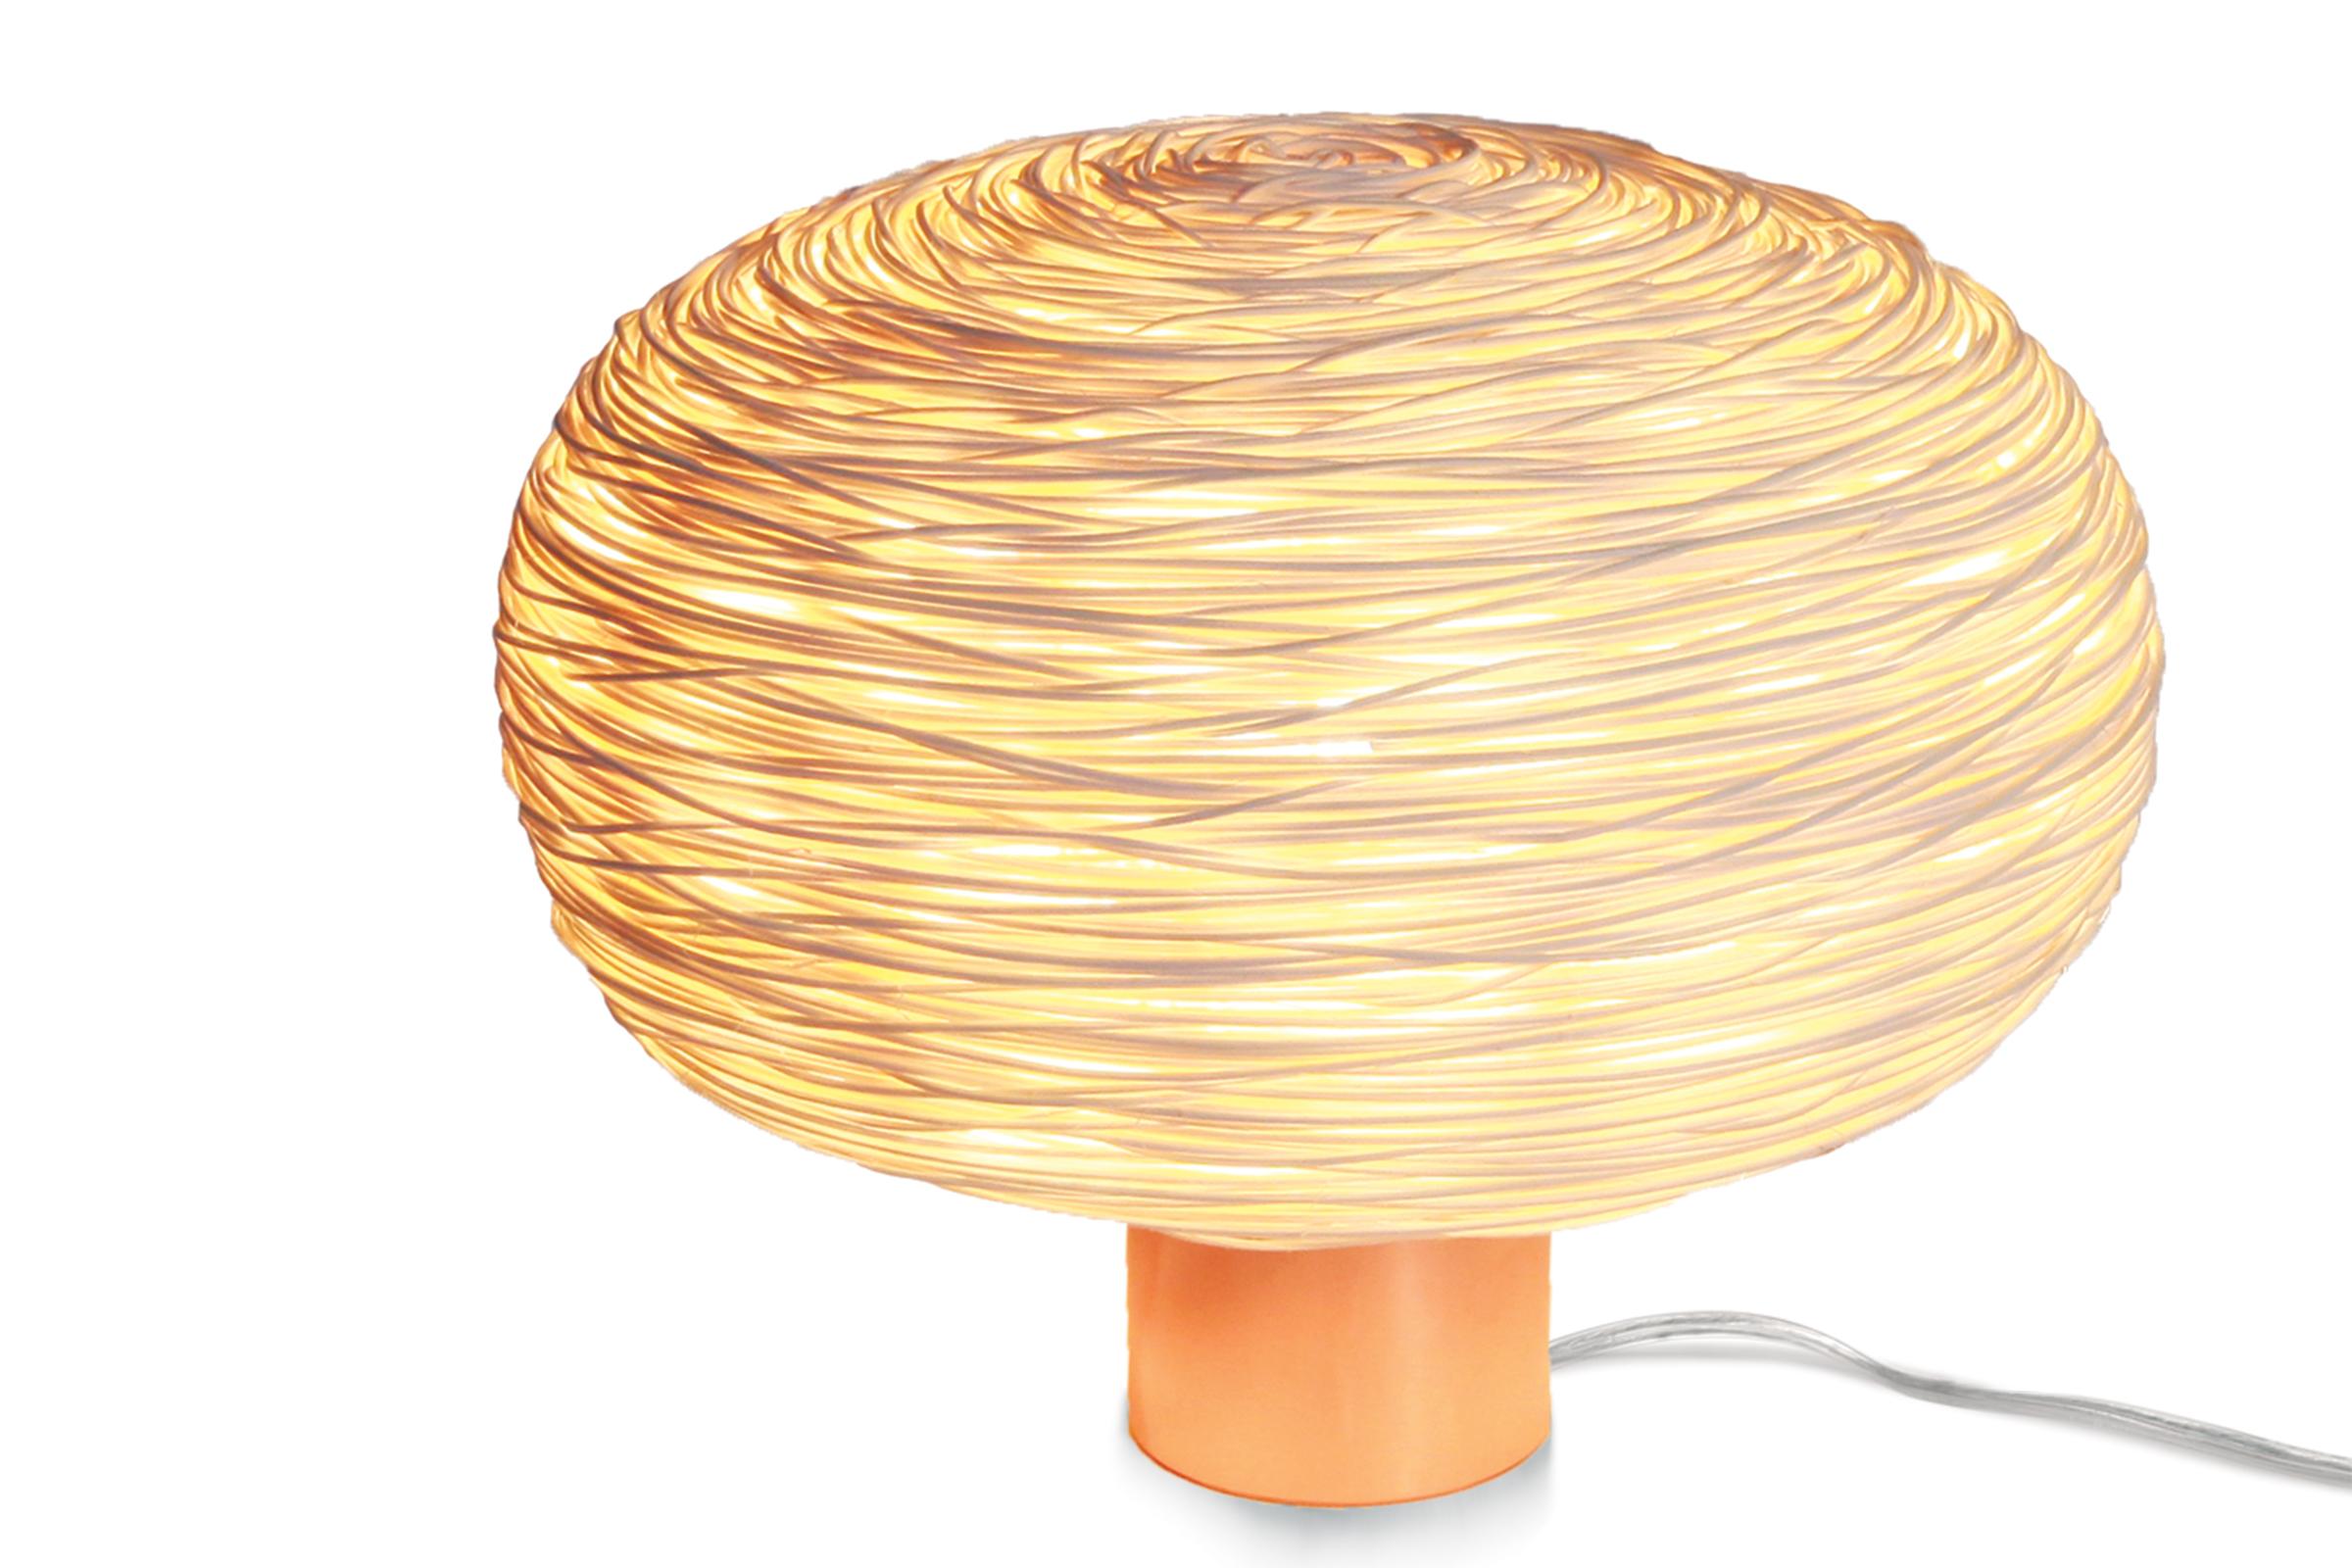 Unit (table-R) est une lampe de table en rotin tressé à la main dont la structure évoque une sphère aplatie ou un mini-monde. La structure est ensuite habillée d'environ un kilomètre de fil de rotin superfin de 1 mm, dans une armure aléatoire